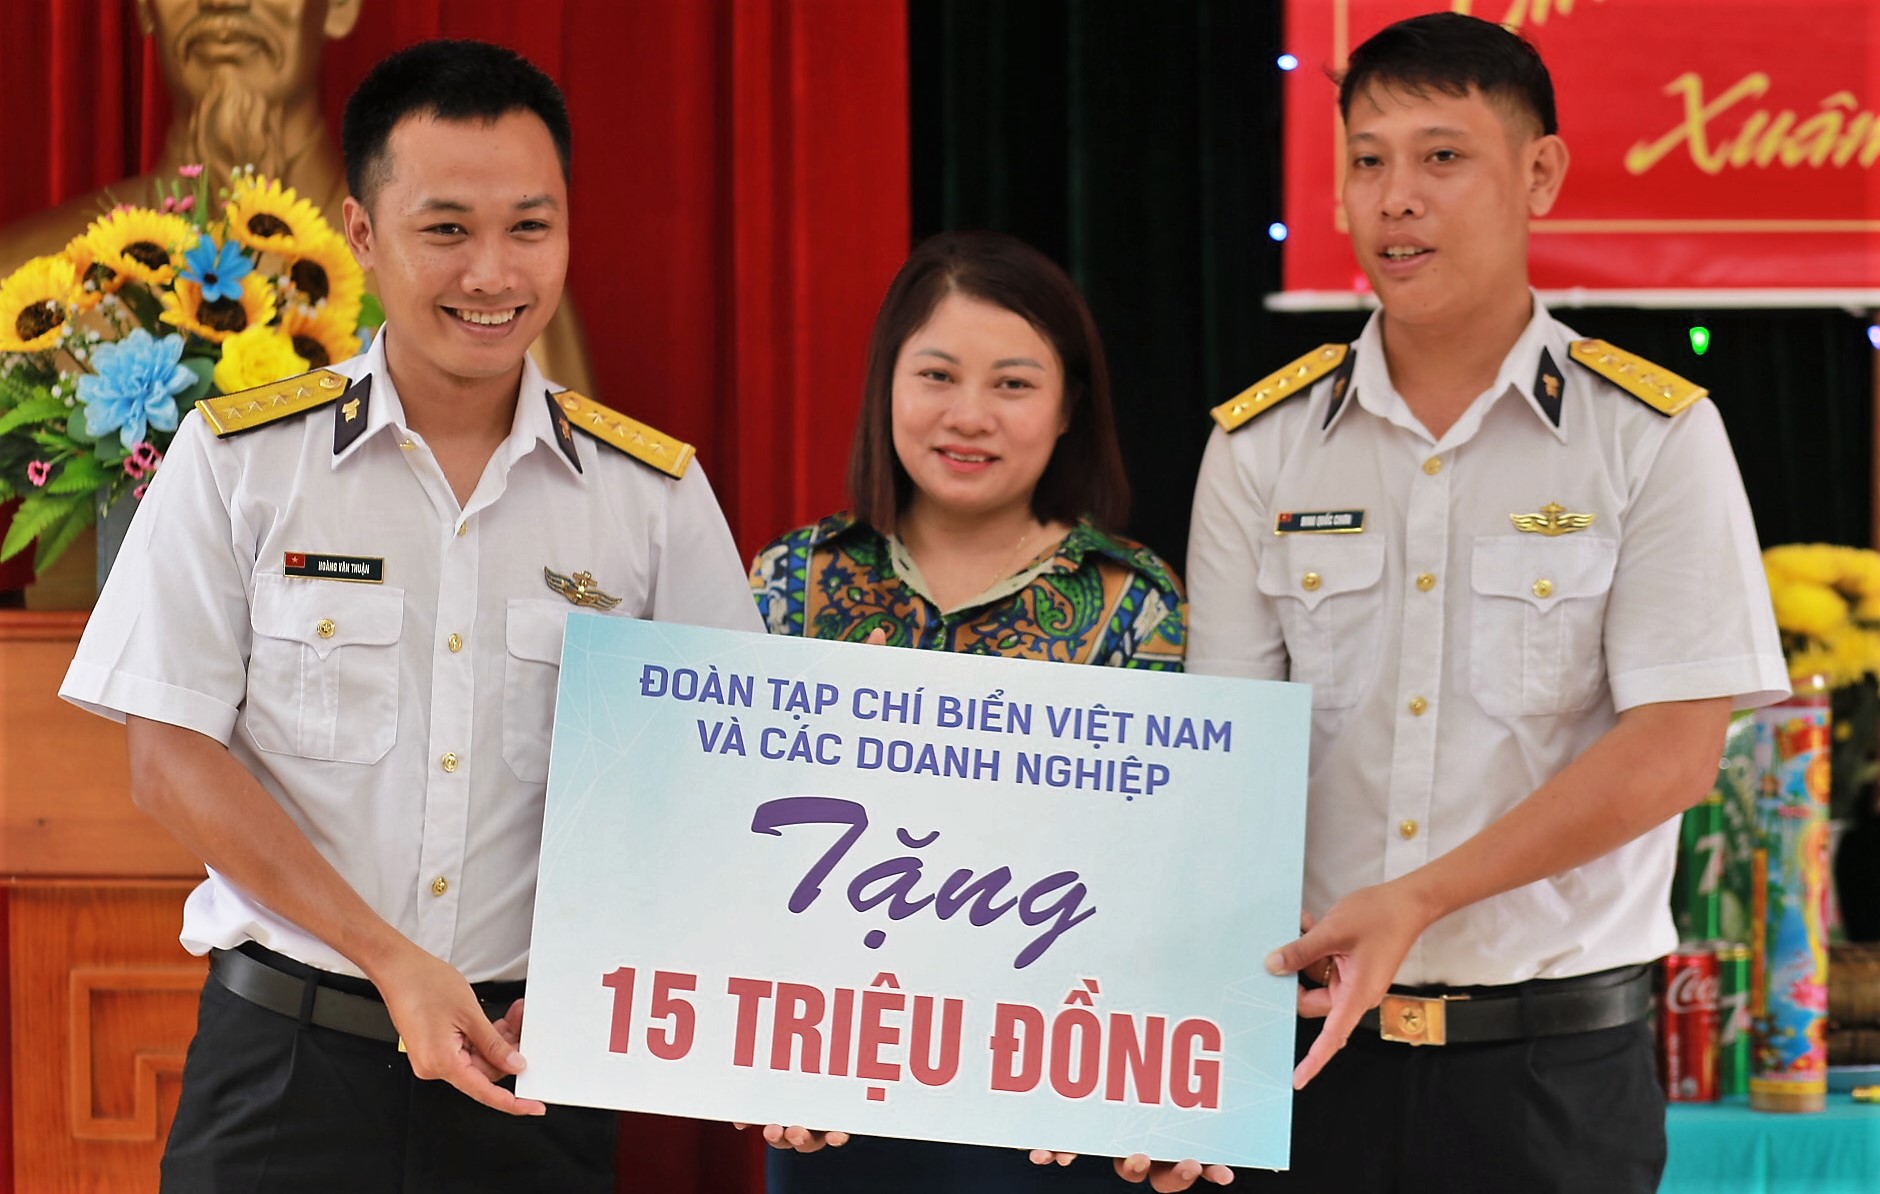 Tạp chí Biển Việt Nam mang Tết sớm đến với cán bộ, chiến sĩ Hải quân và Nhân dân ở Tây Nam